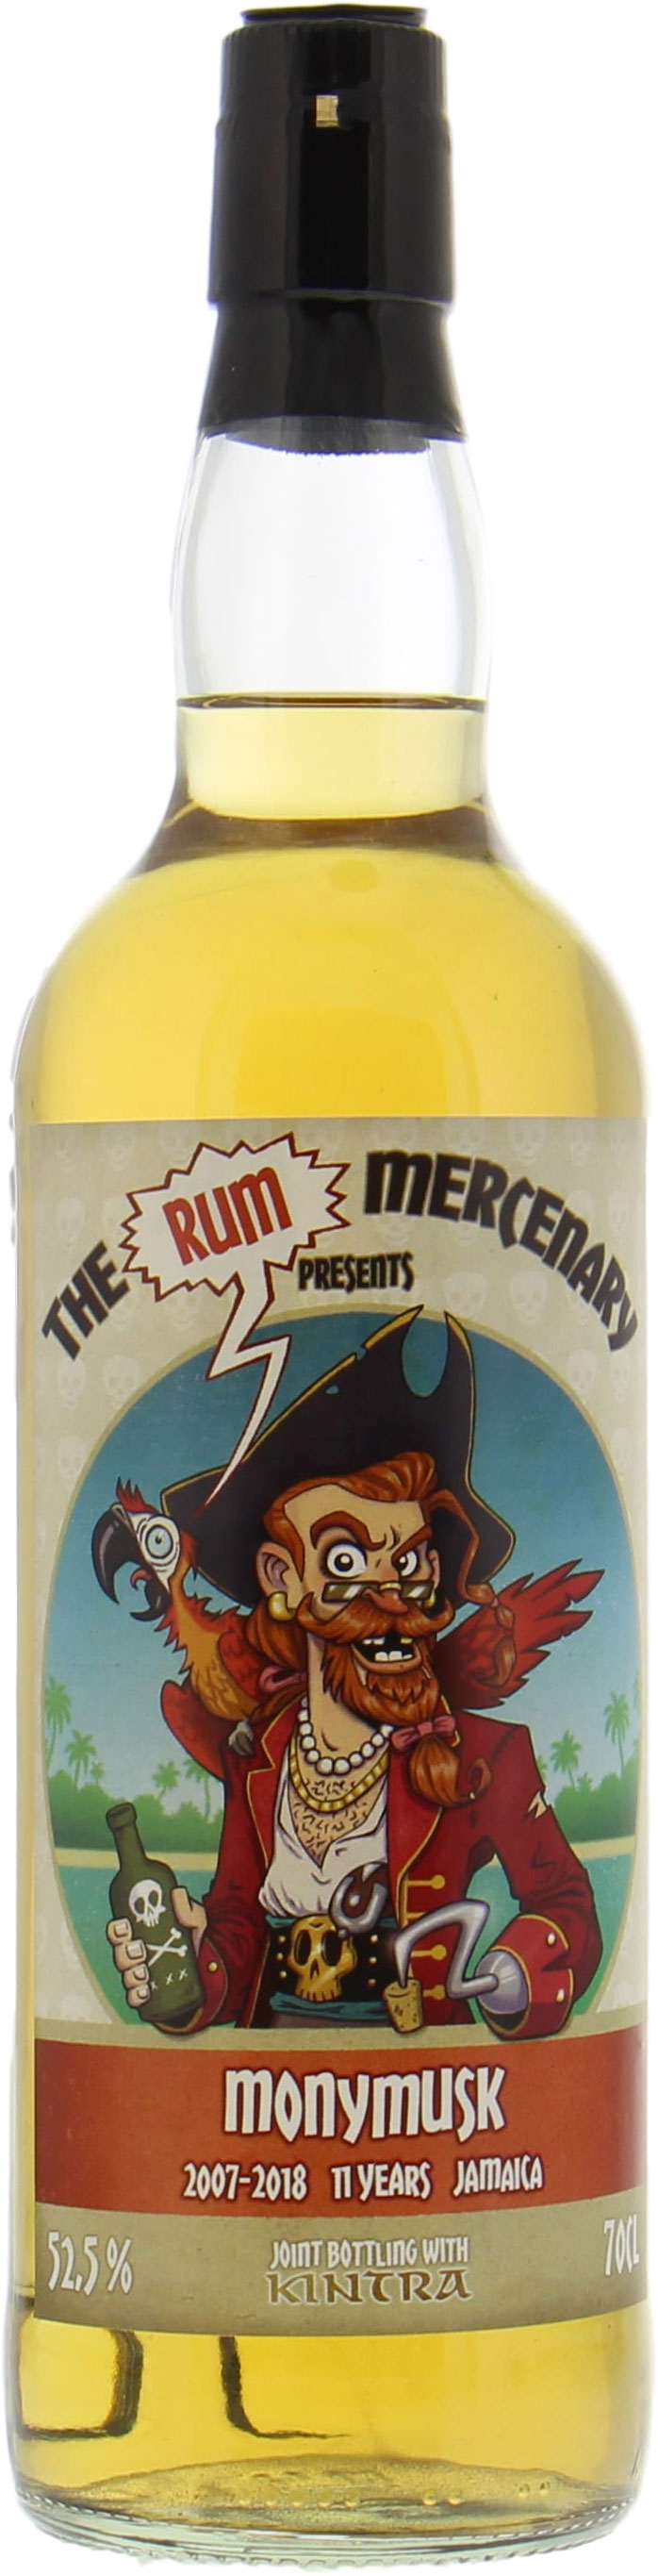 Monymusk - 11 Years Old The Rum Mercenary 52.5% 2007 Perfect